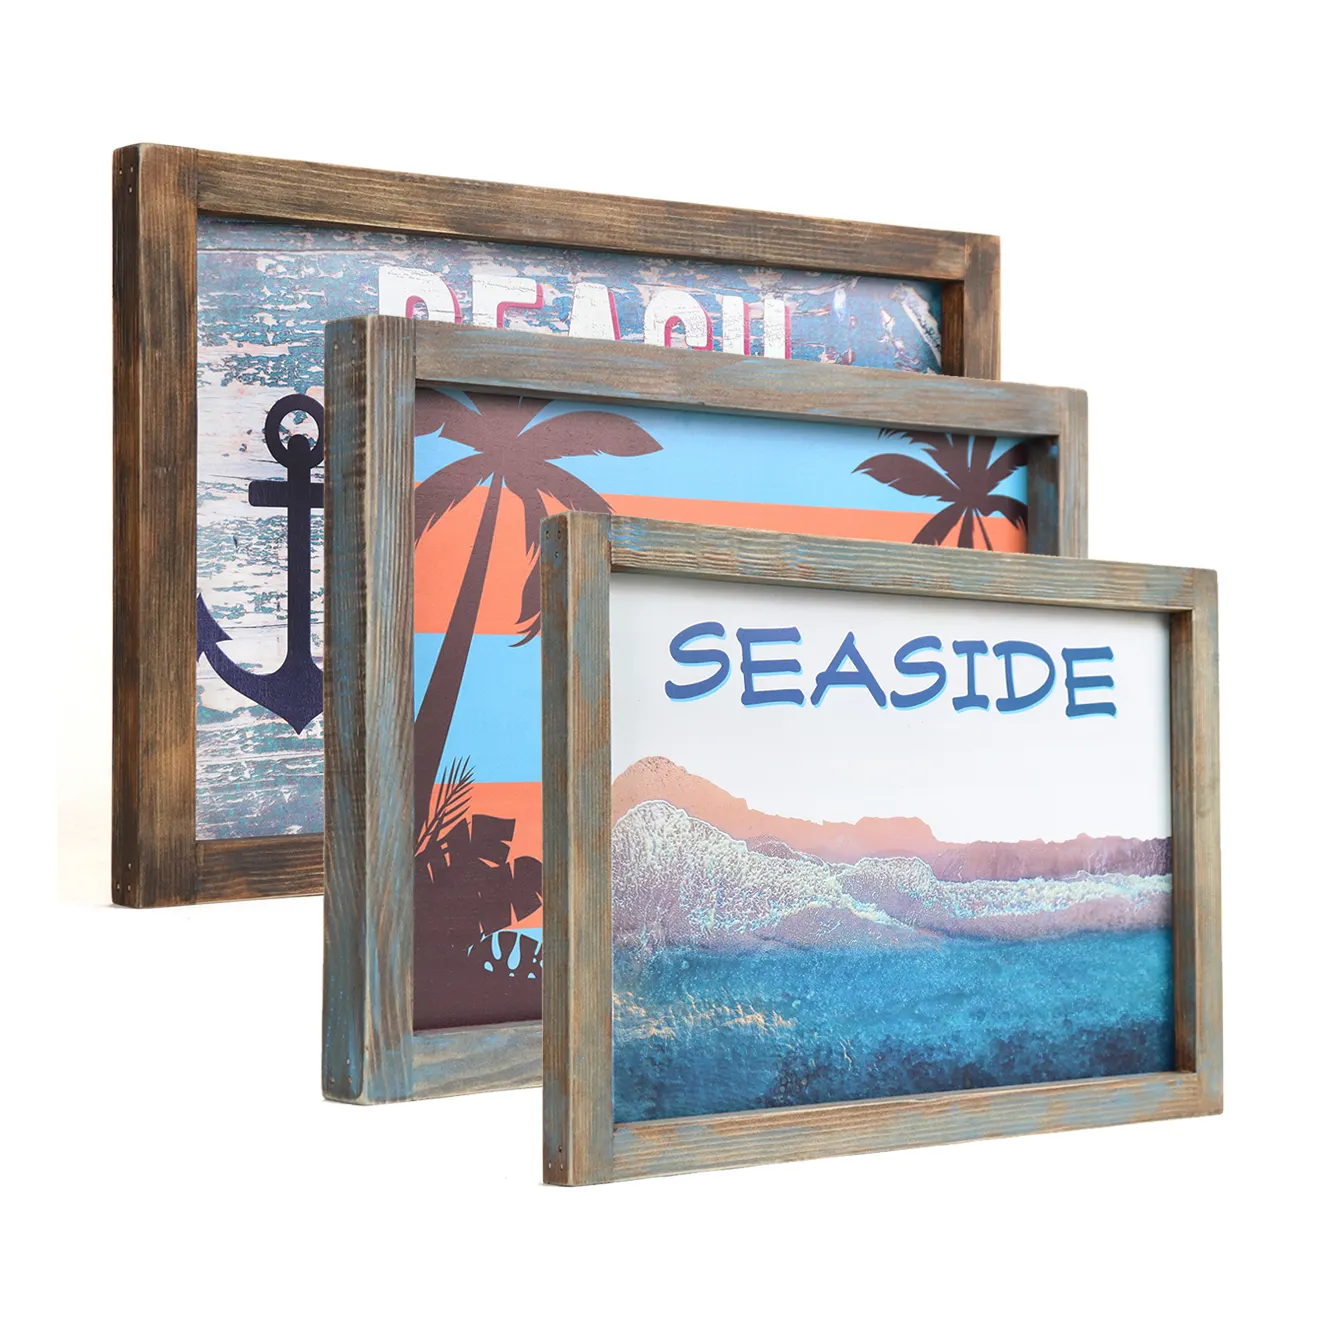 Vintage Seaside 12 x18in Holztafel Küsten holz Zeichen Strand Ocean front Art Decor Trend ing Nautical Theme